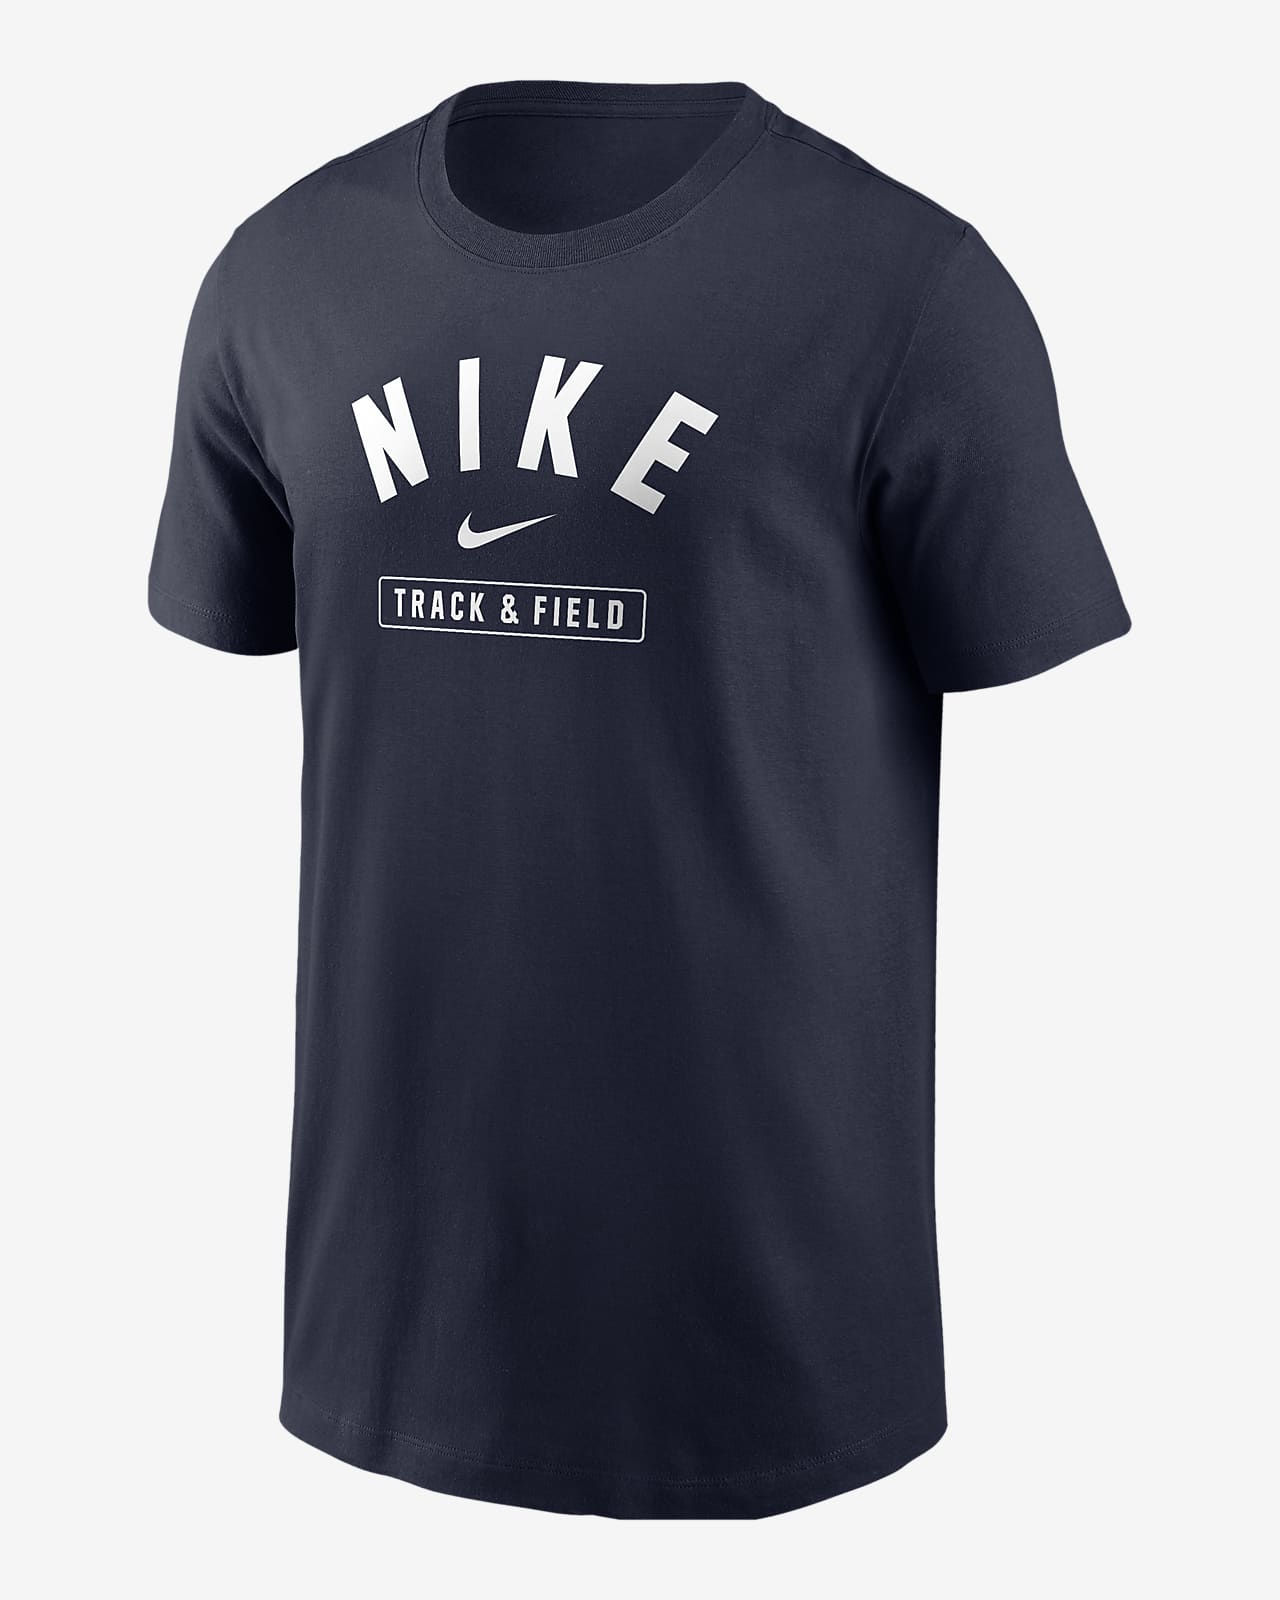 Nike Big Kids' Track & Field T-Shirt